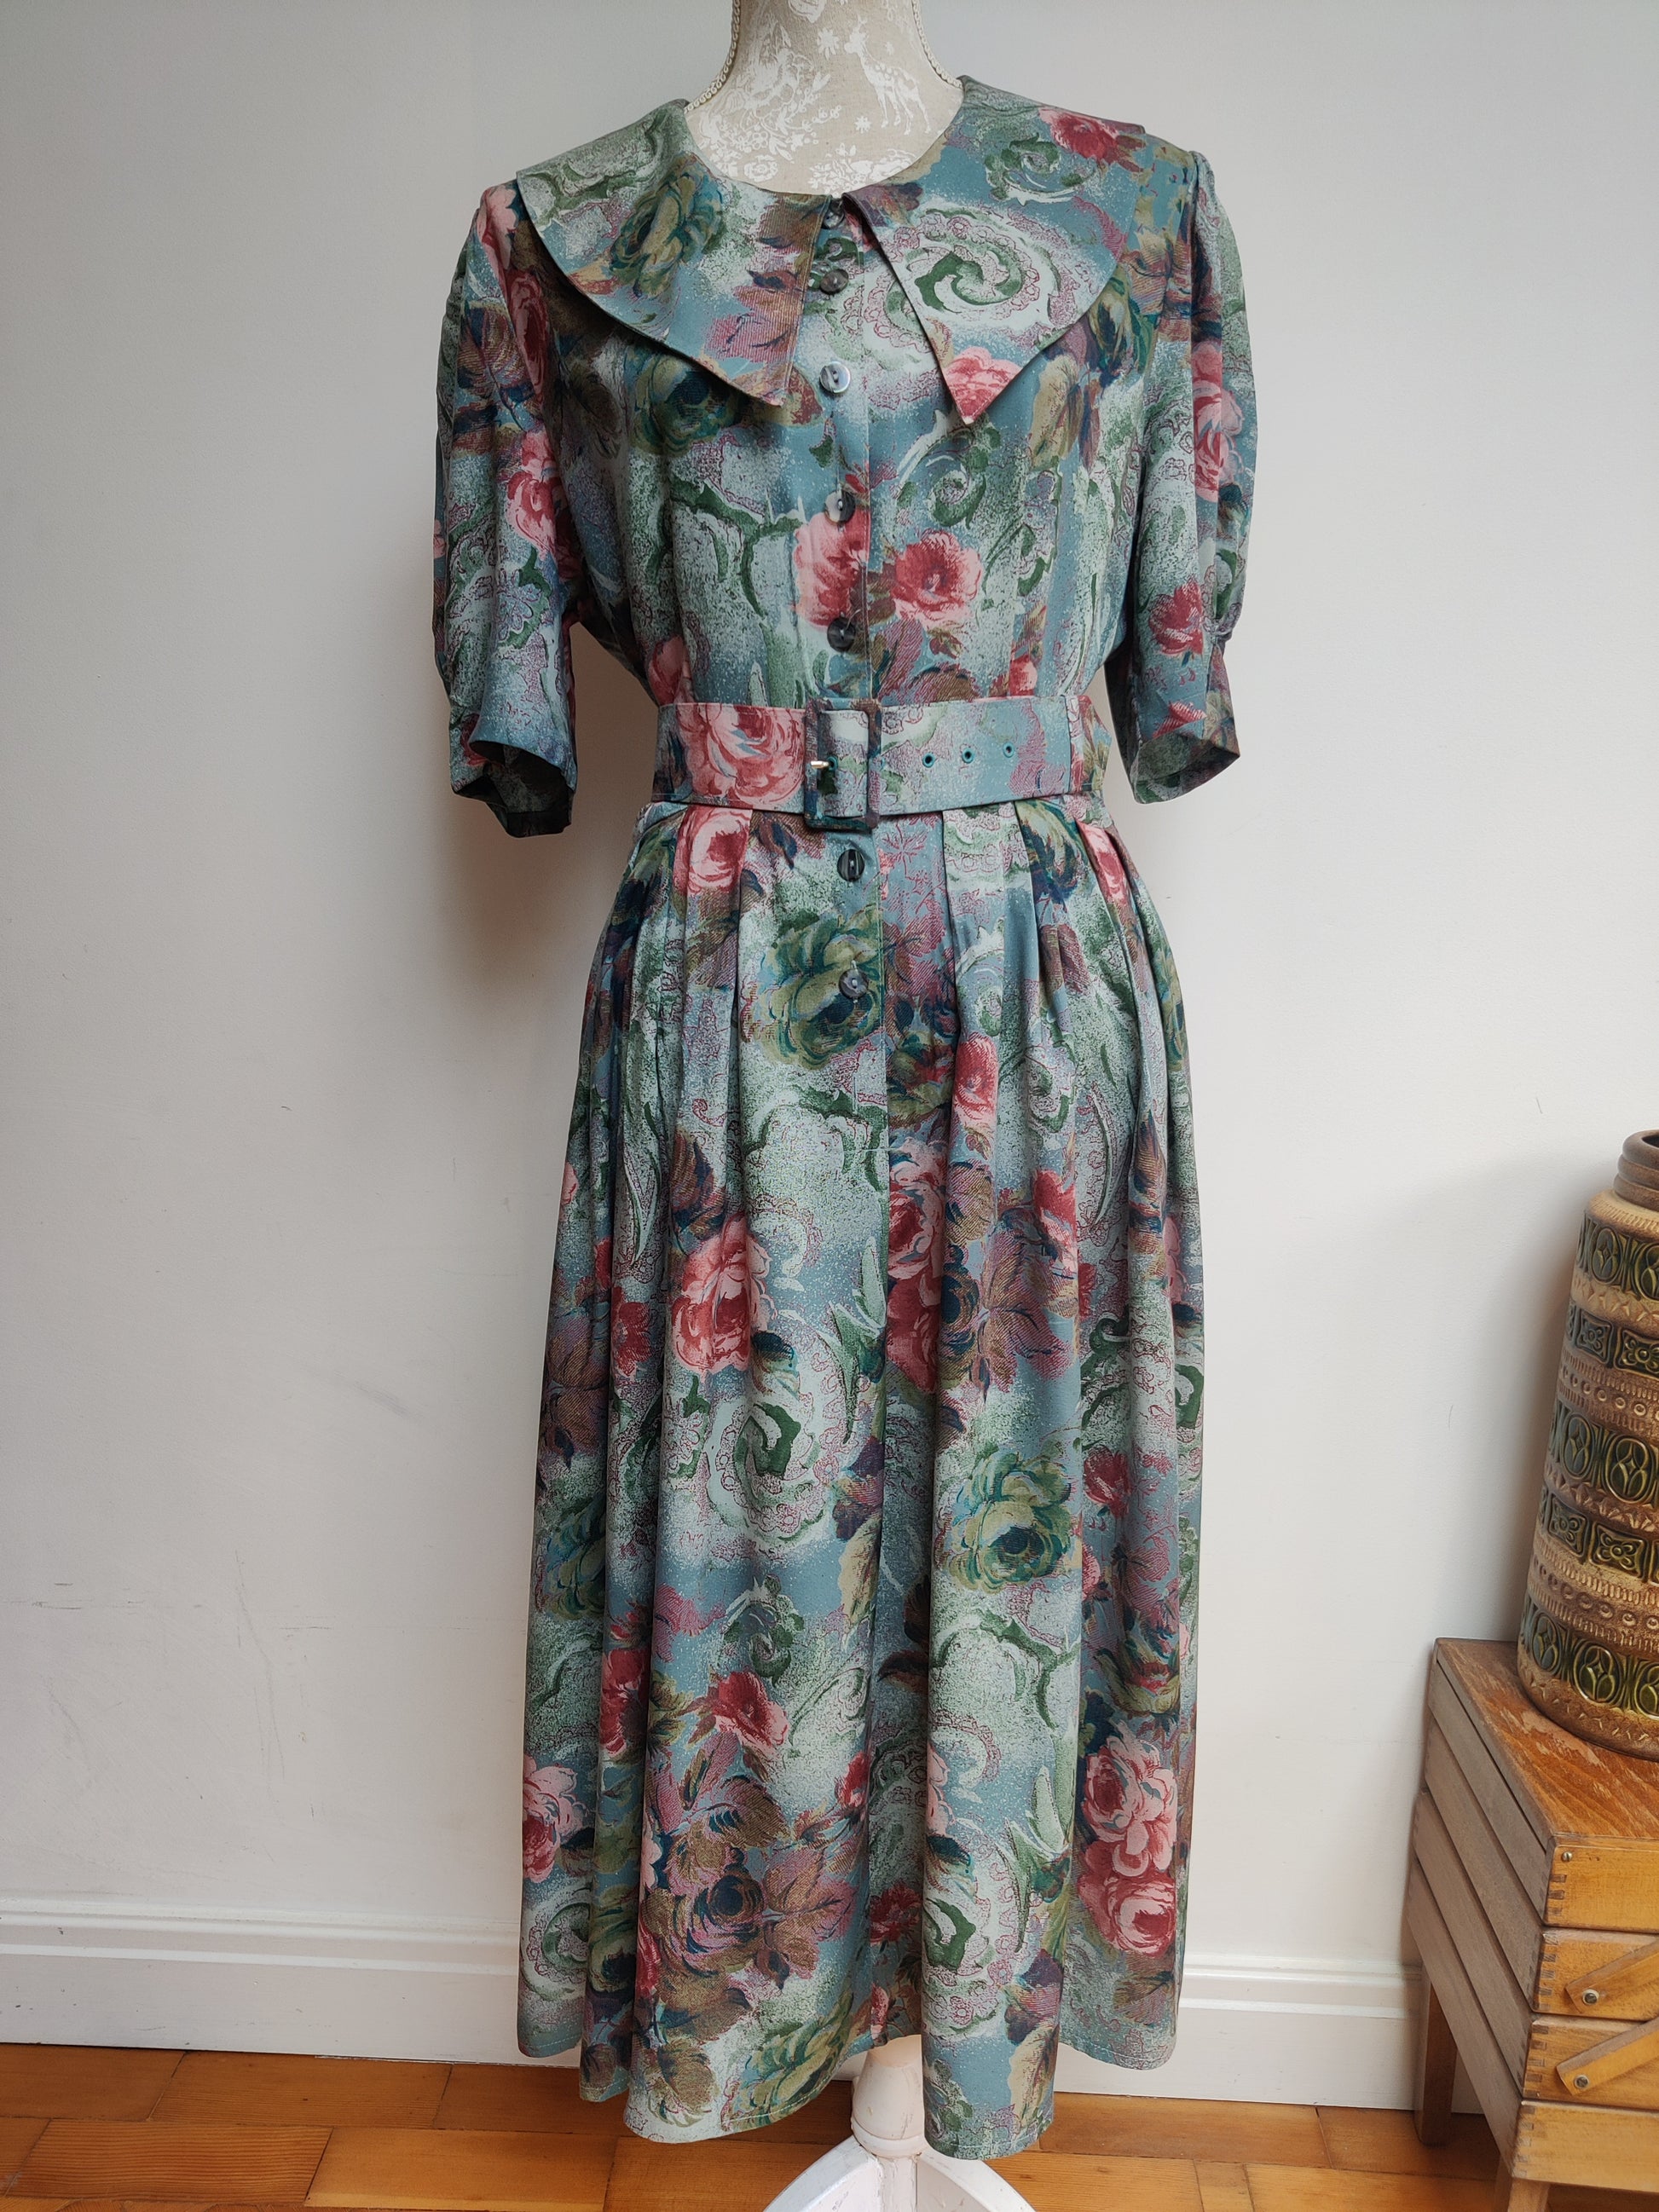 Vintage tea dress with original belt.